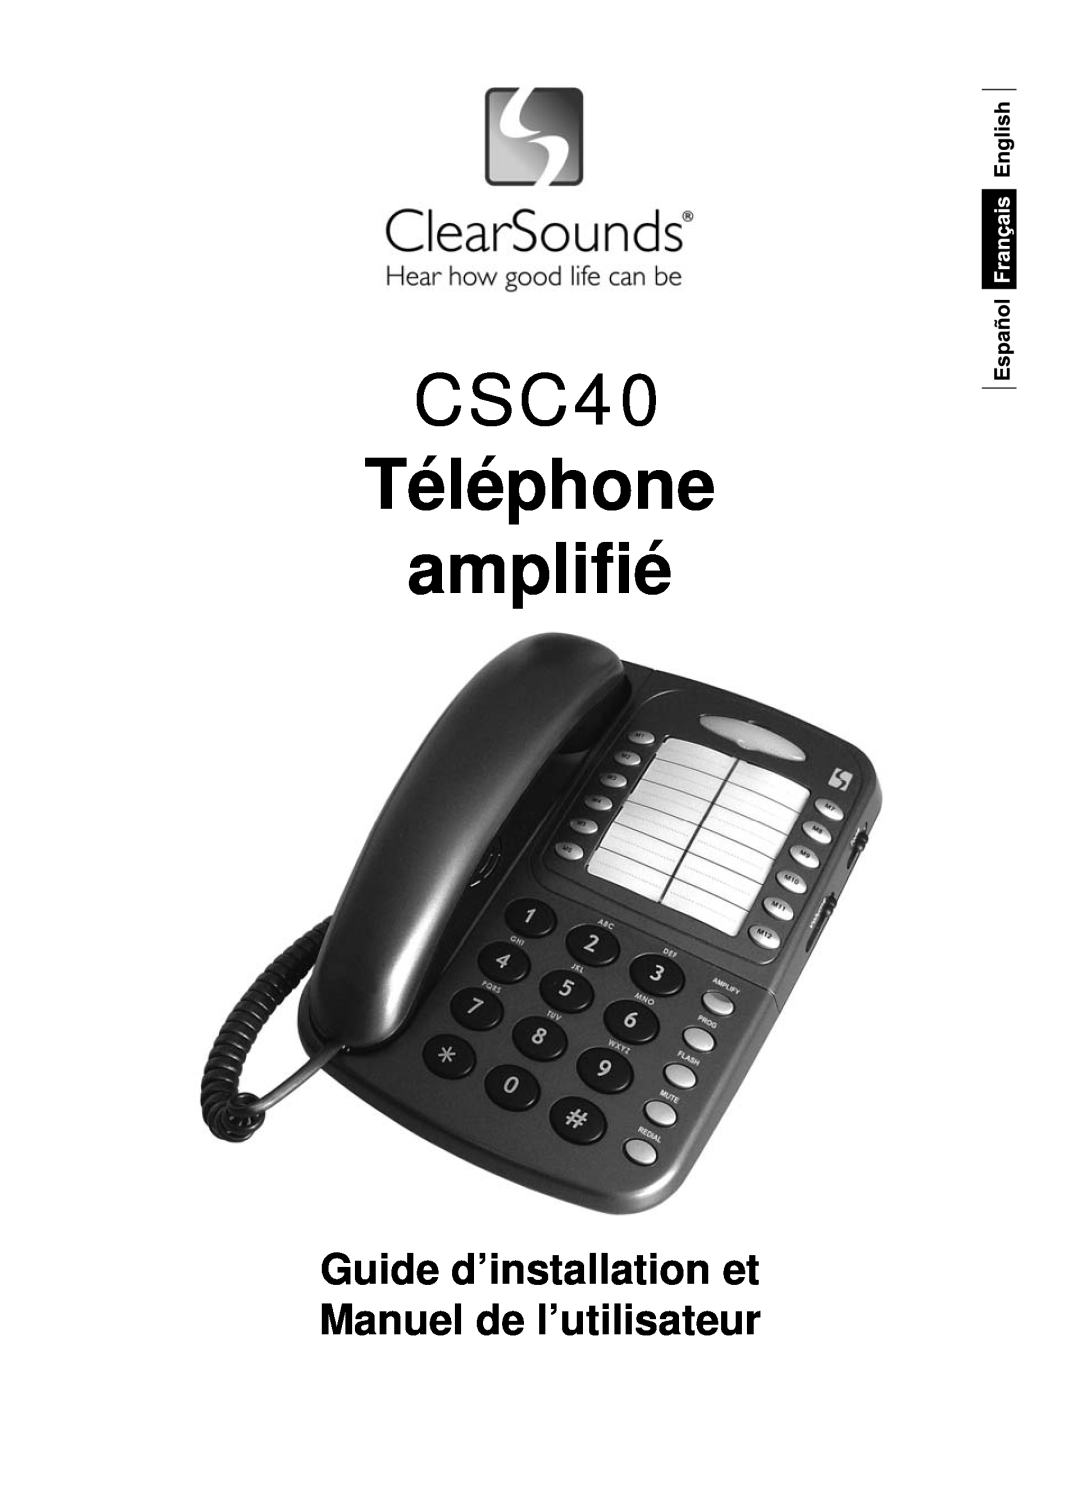 ClearSounds user manual CSC40 Téléphone ampliﬁé, Guide d’installation et Manuel de l’utilisateur 